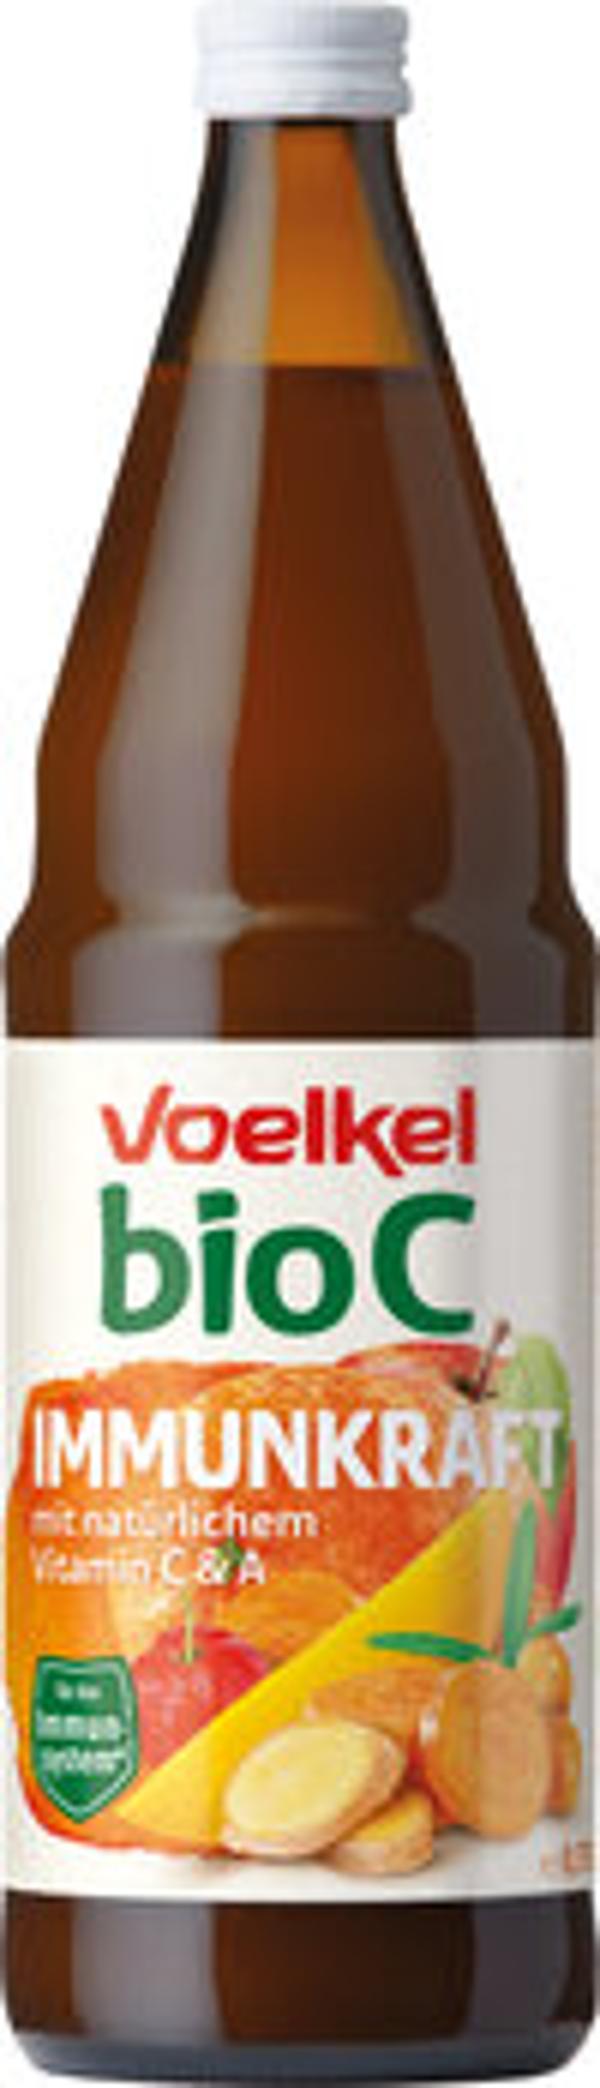 Produktfoto zu BioC Immunkraft Saft 0,75l